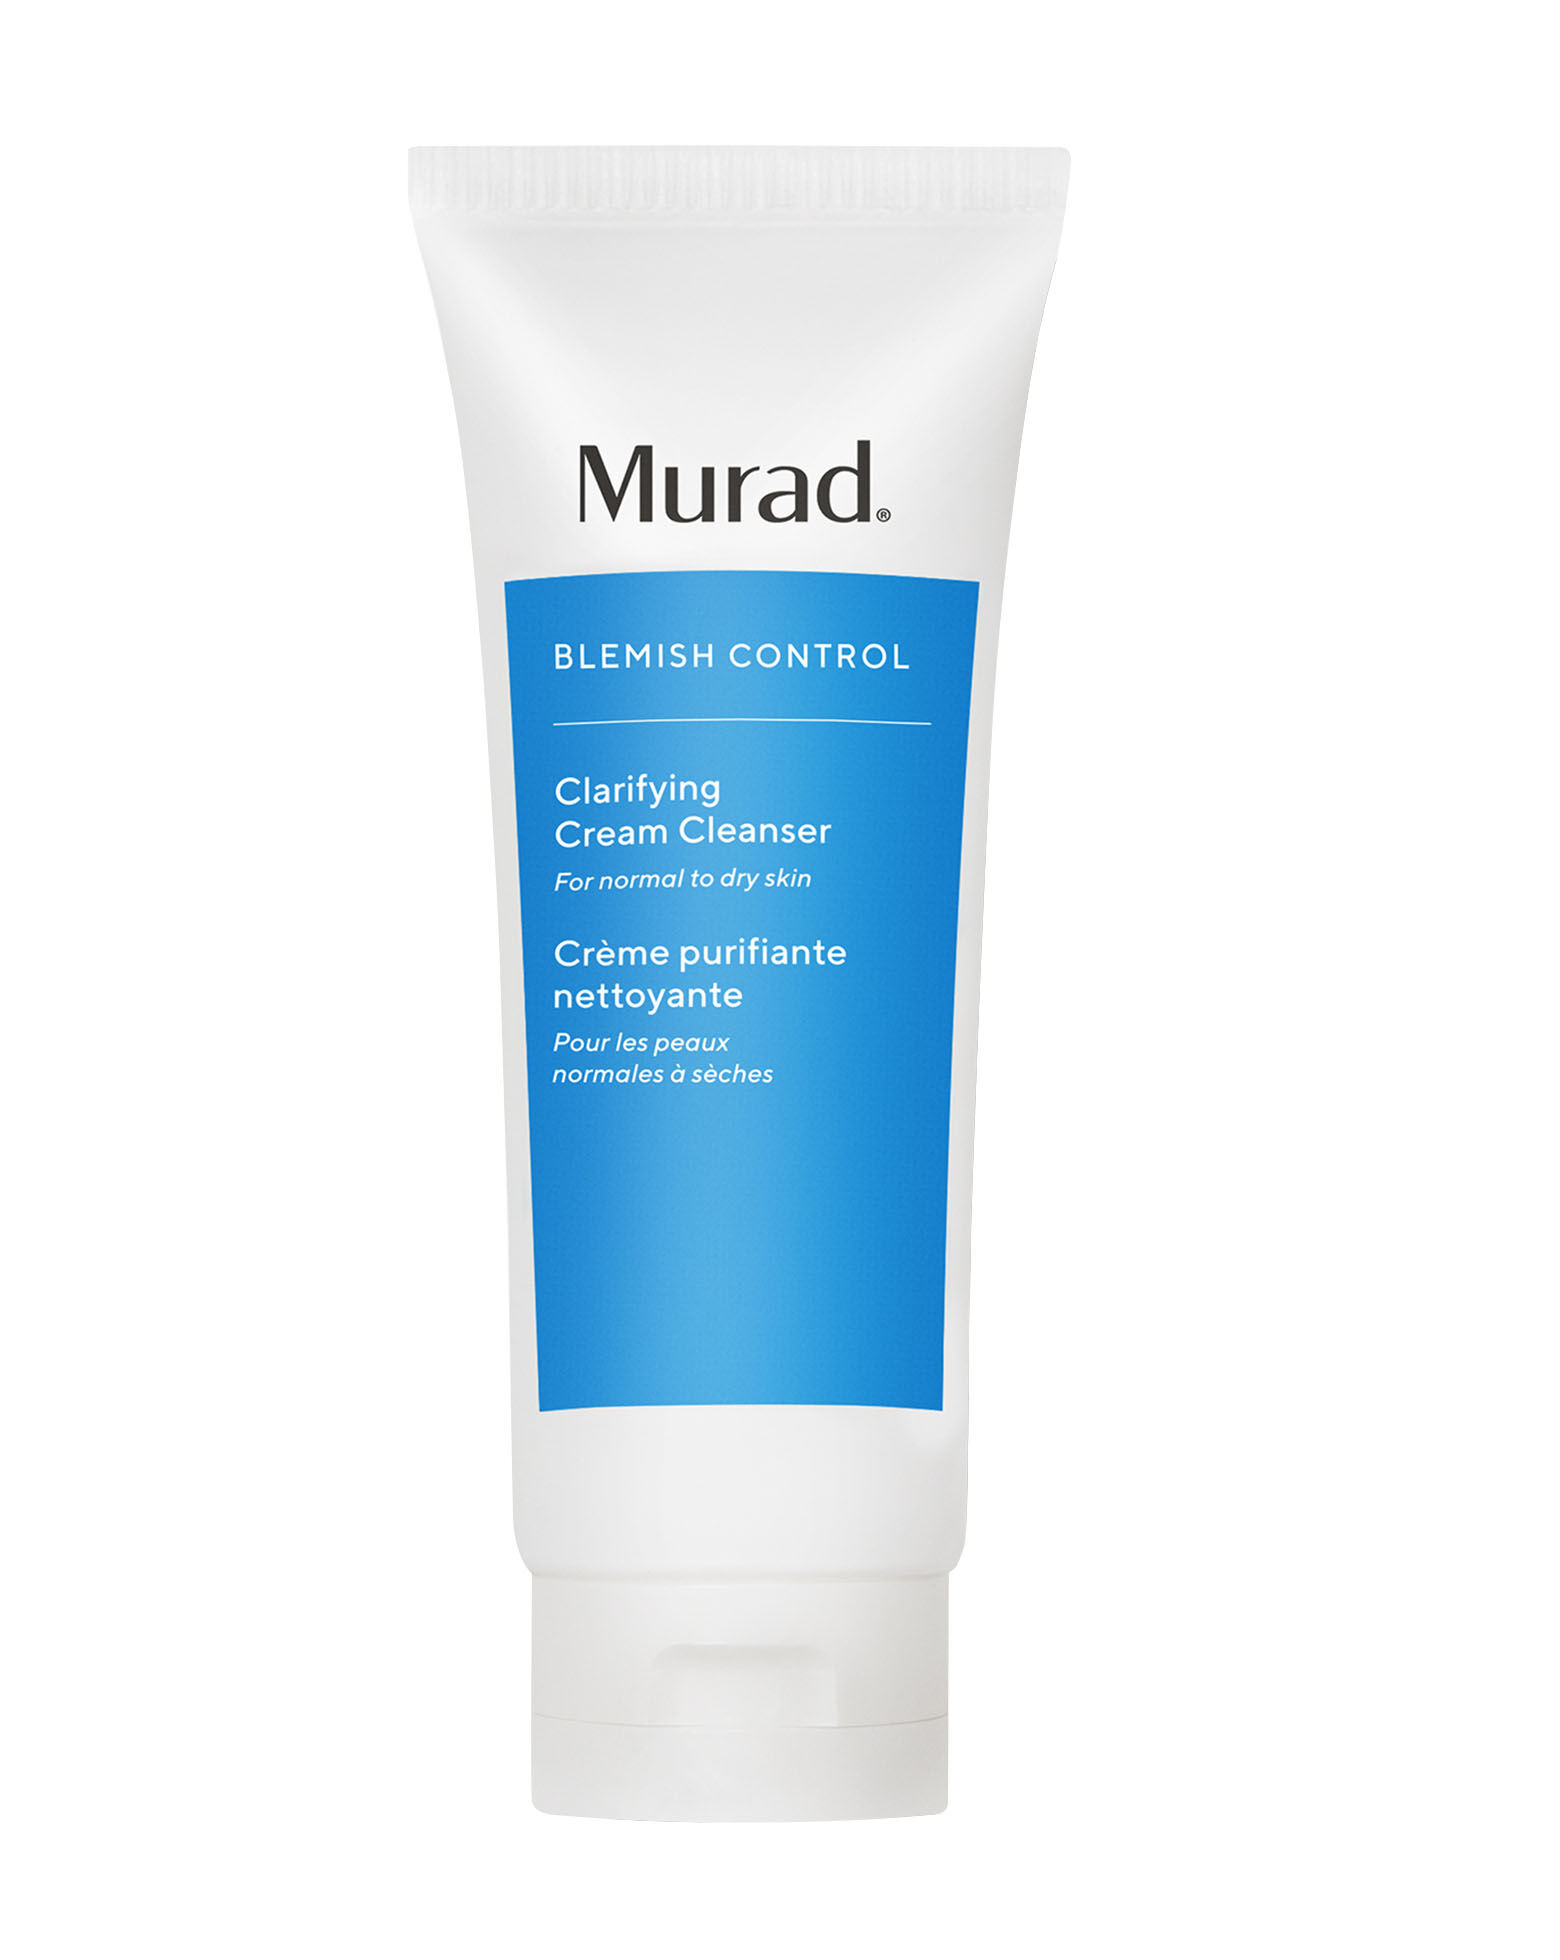 Murad - Blemish Control Clarifying Cream Cleanser